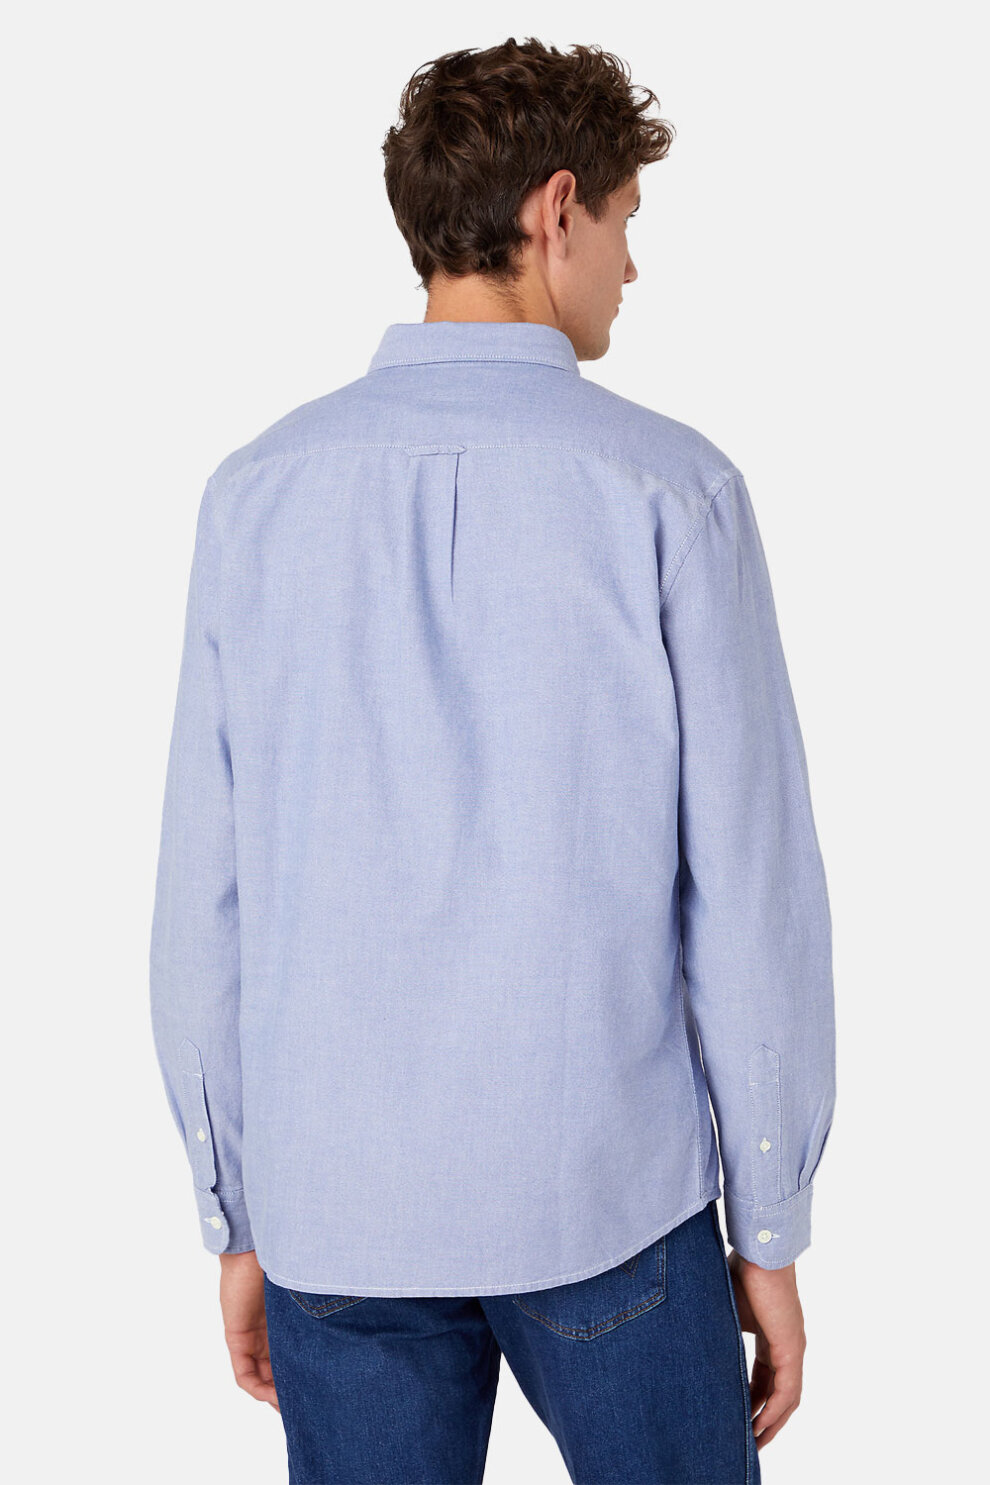 MUŠKARCI - Košulje - Wrangler košulja - Dugi rukavi - Plava